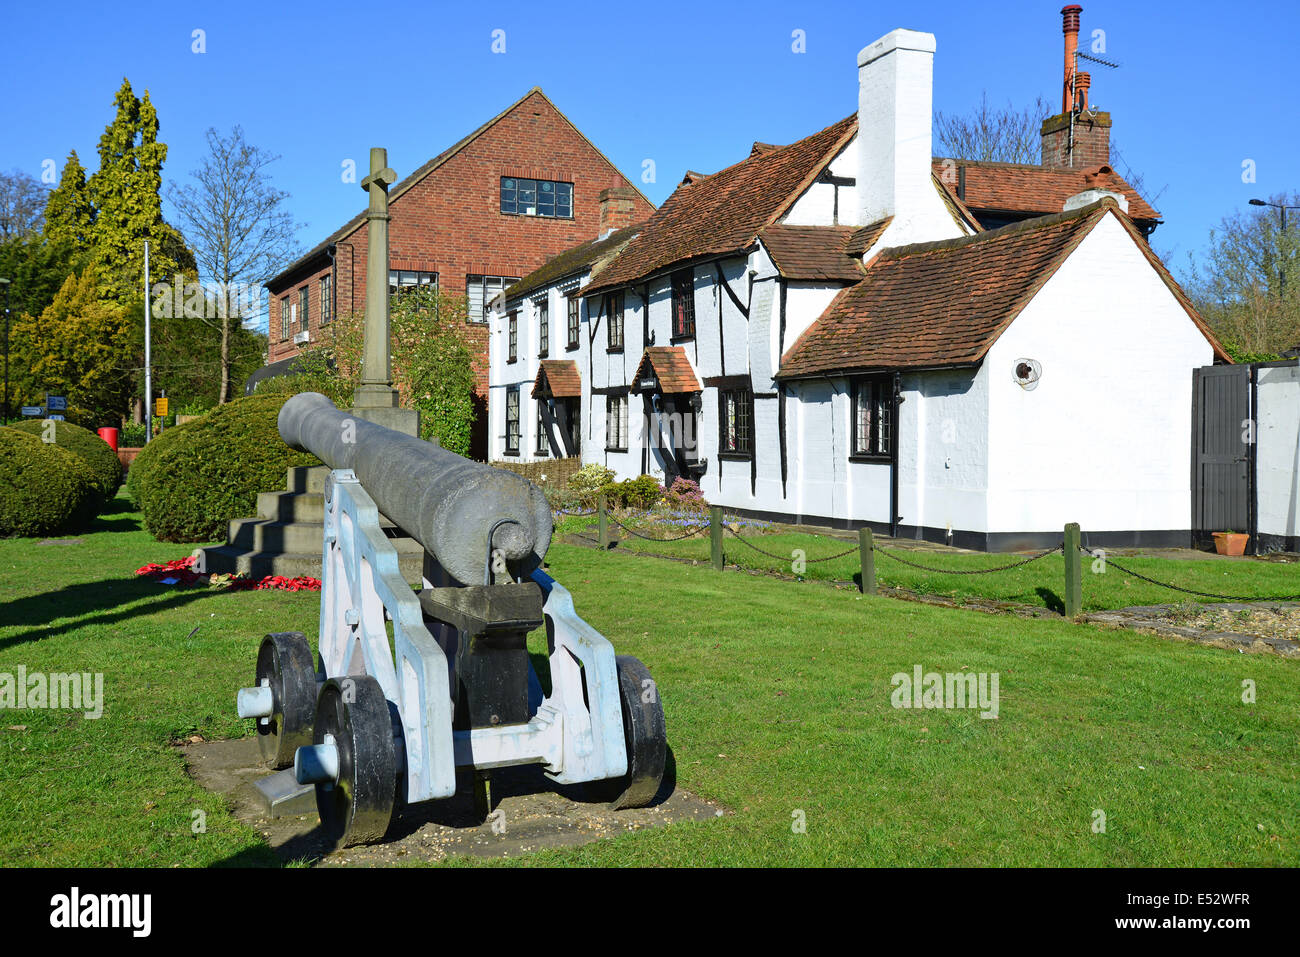 Chobham Cannon et Cottage, la High Street, Chobham, Surrey, Angleterre, Royaume-Uni Banque D'Images